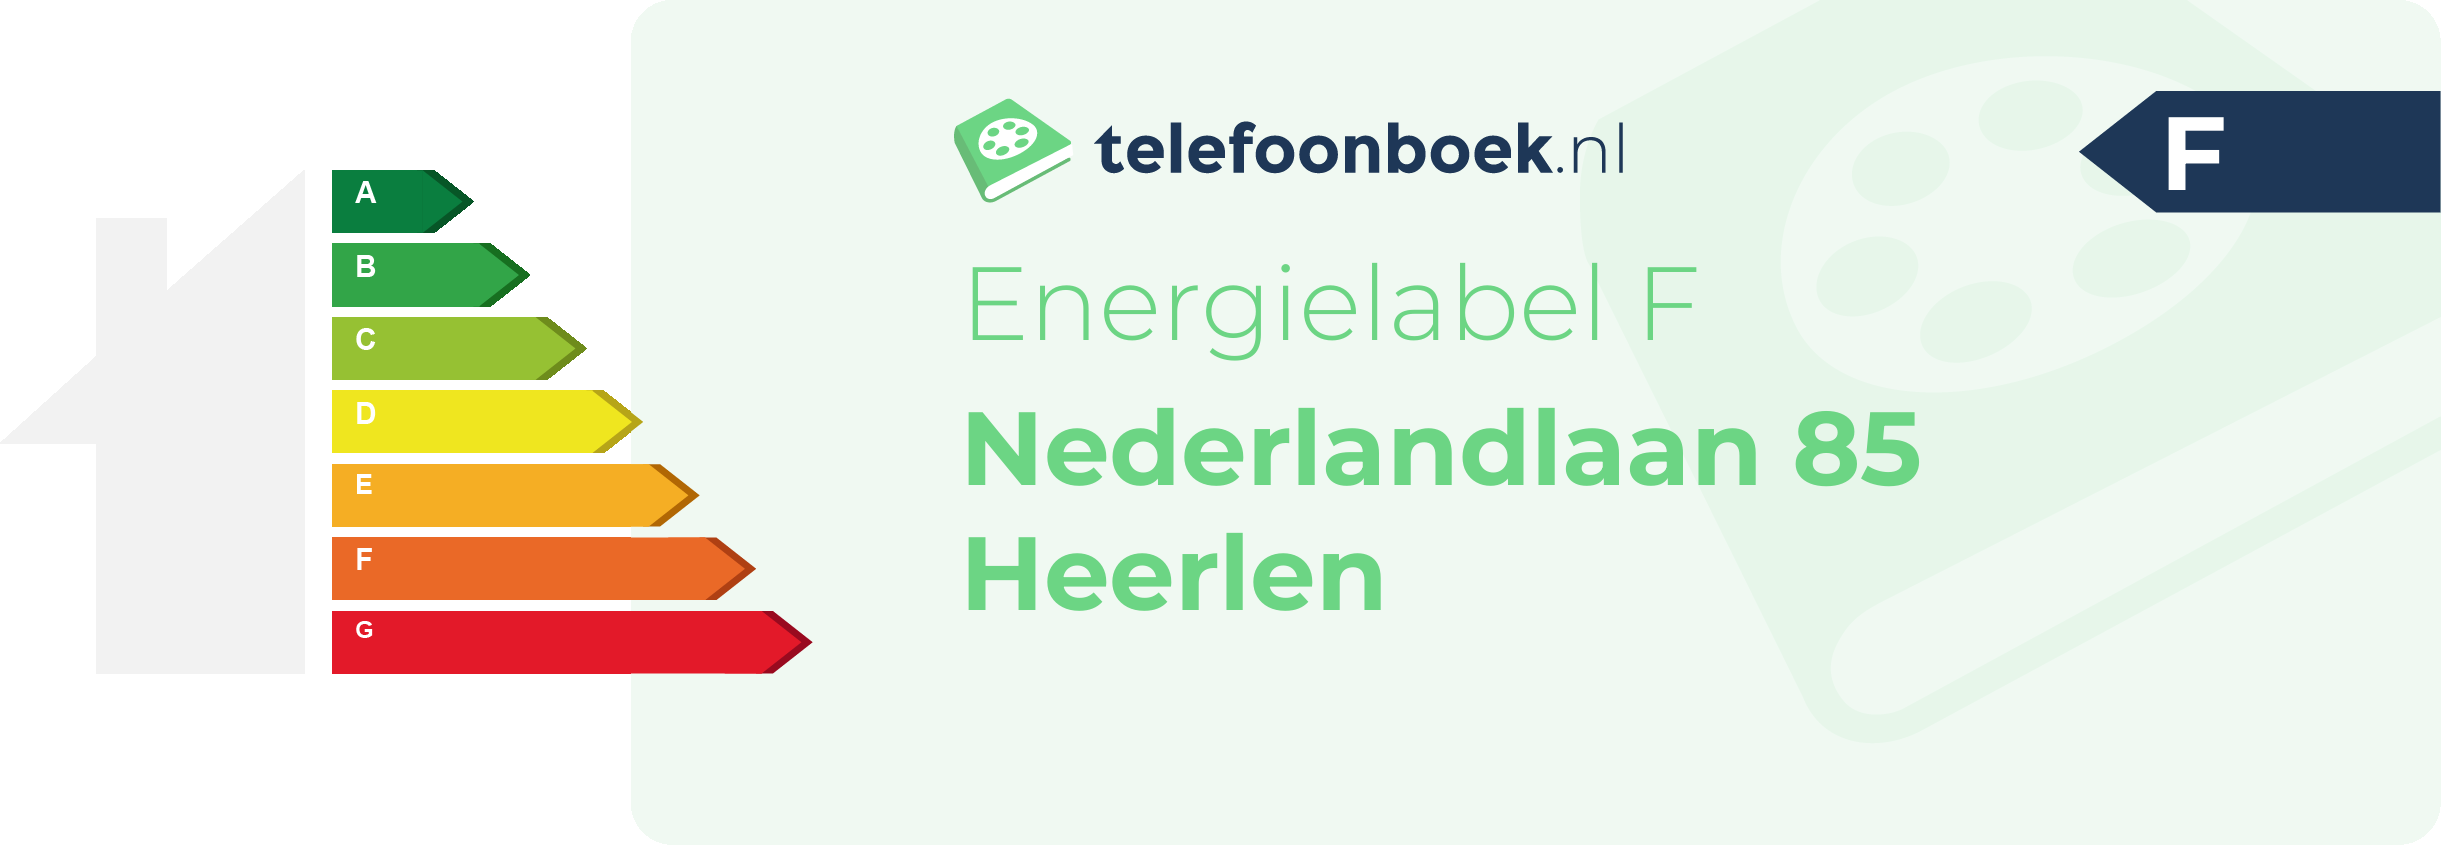 Energielabel Nederlandlaan 85 Heerlen